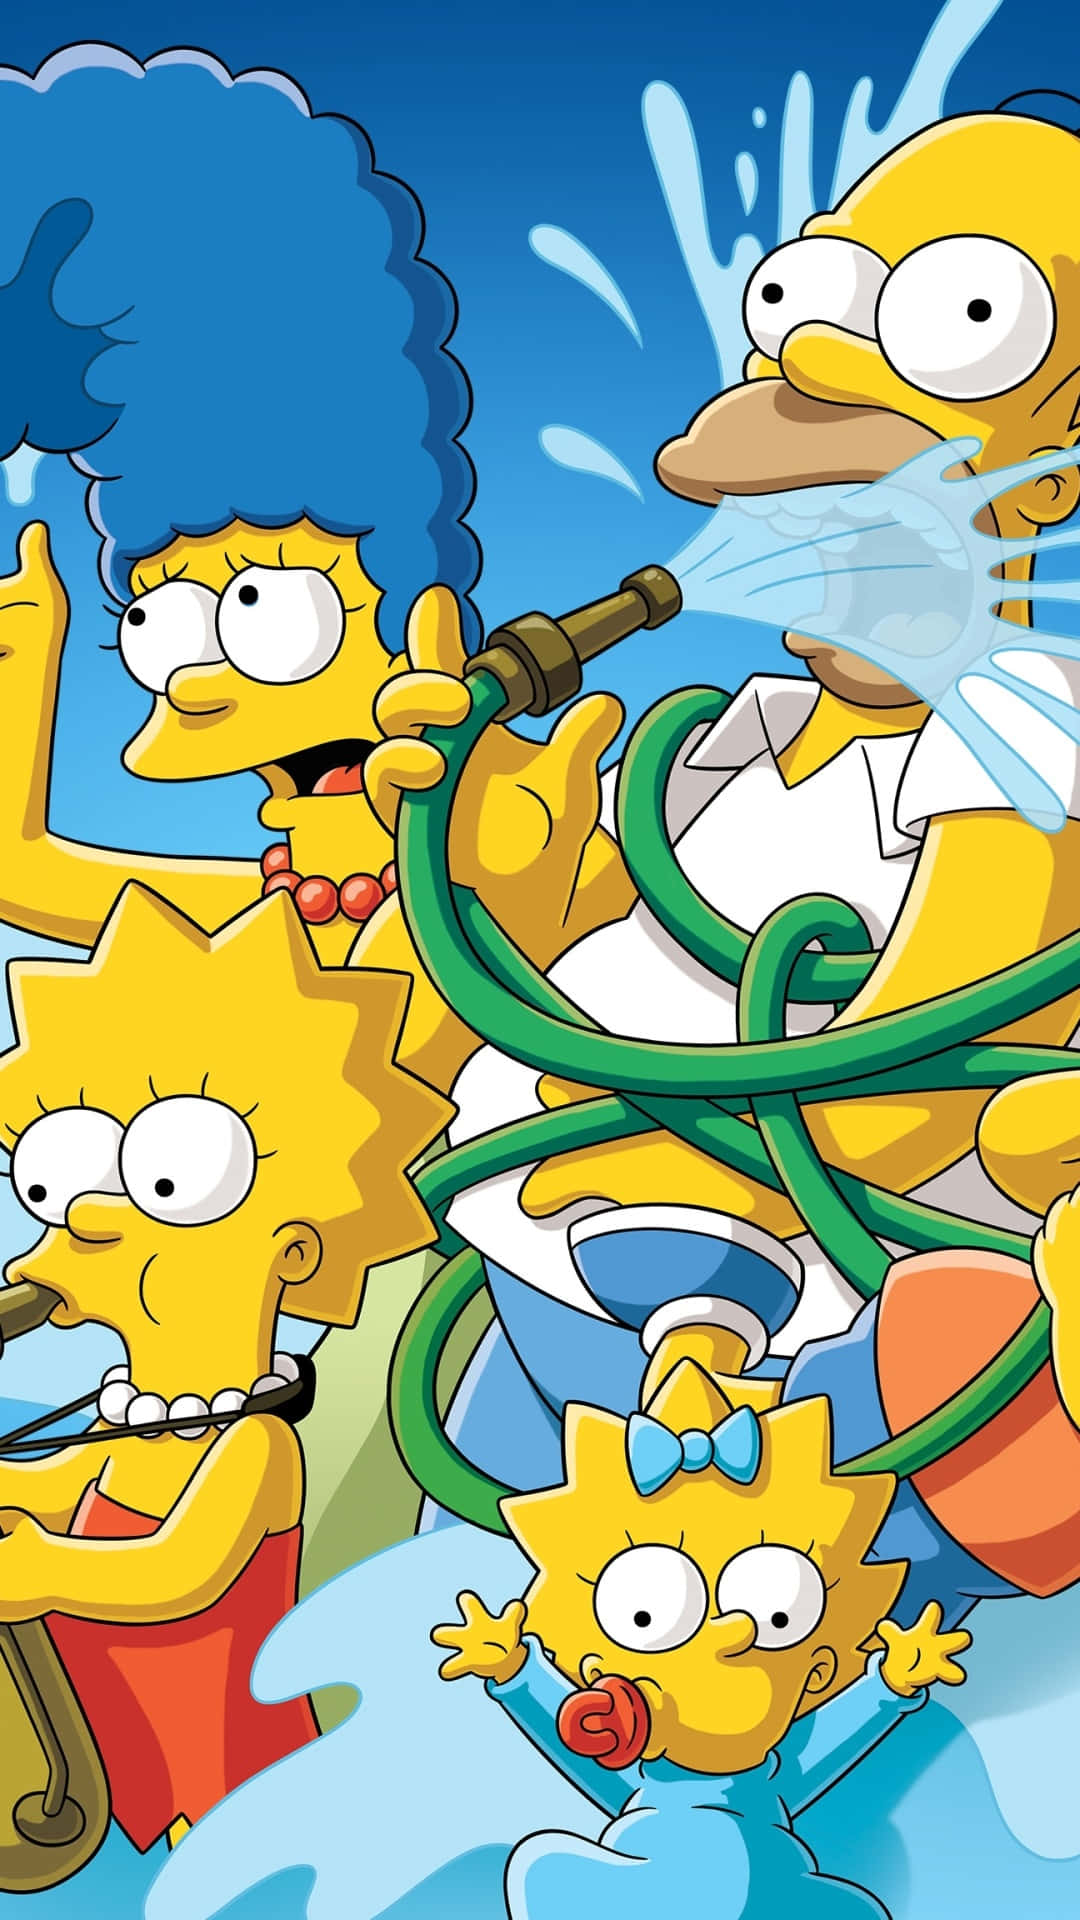 Aproveitandobons Momentos Com Amigos E Família Nos Simpsons